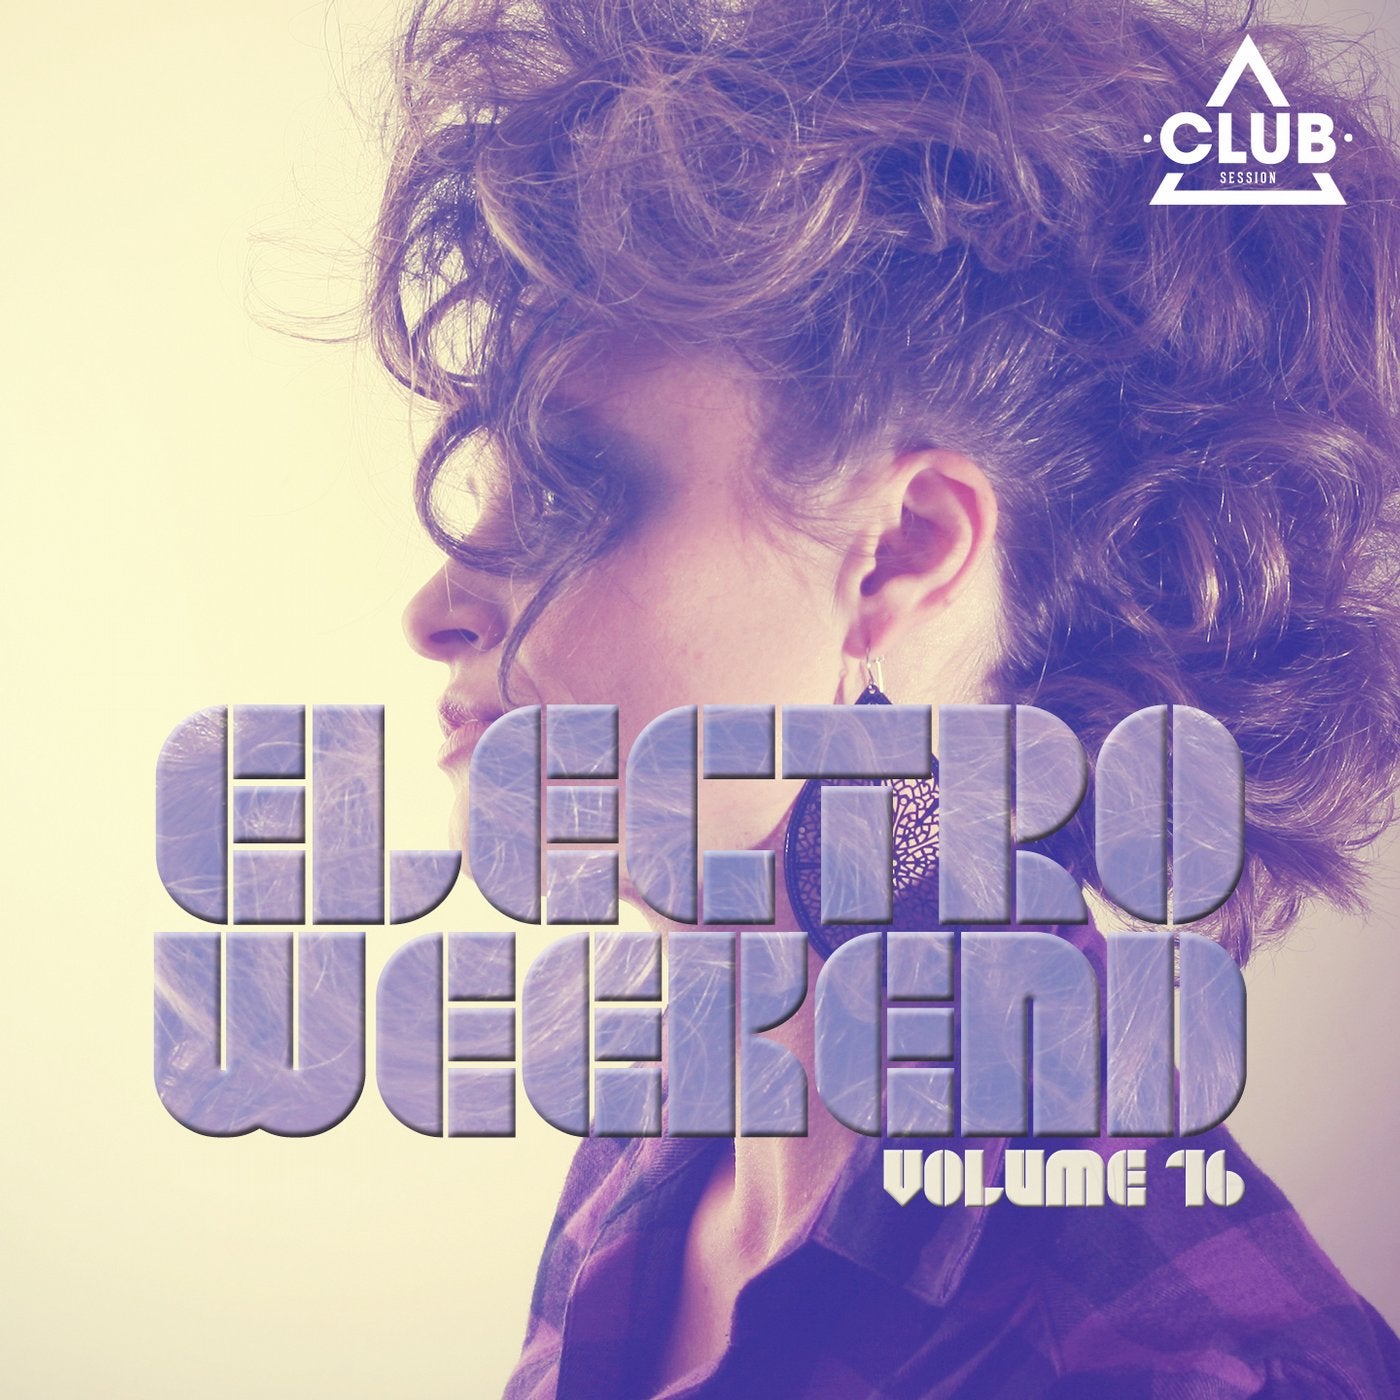 Electro Weekend Volume 15